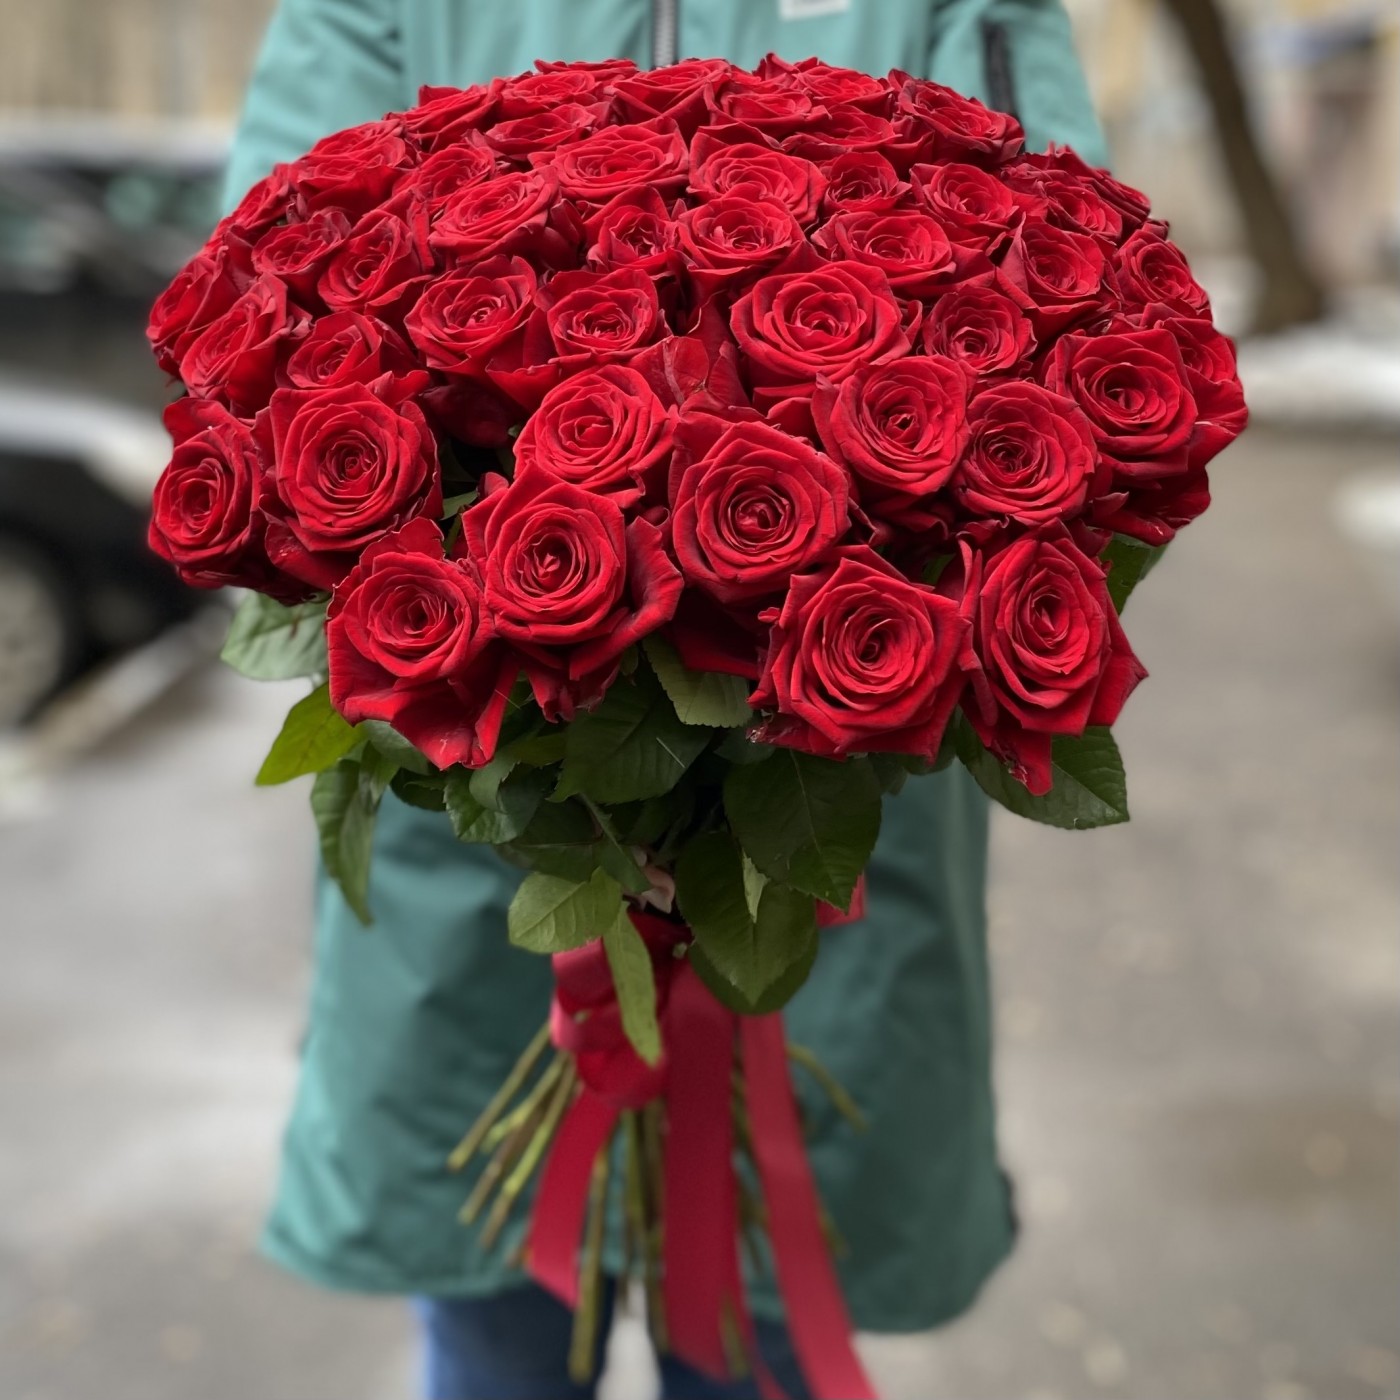 купить цветы в москве недорого с бесплатной доставкой